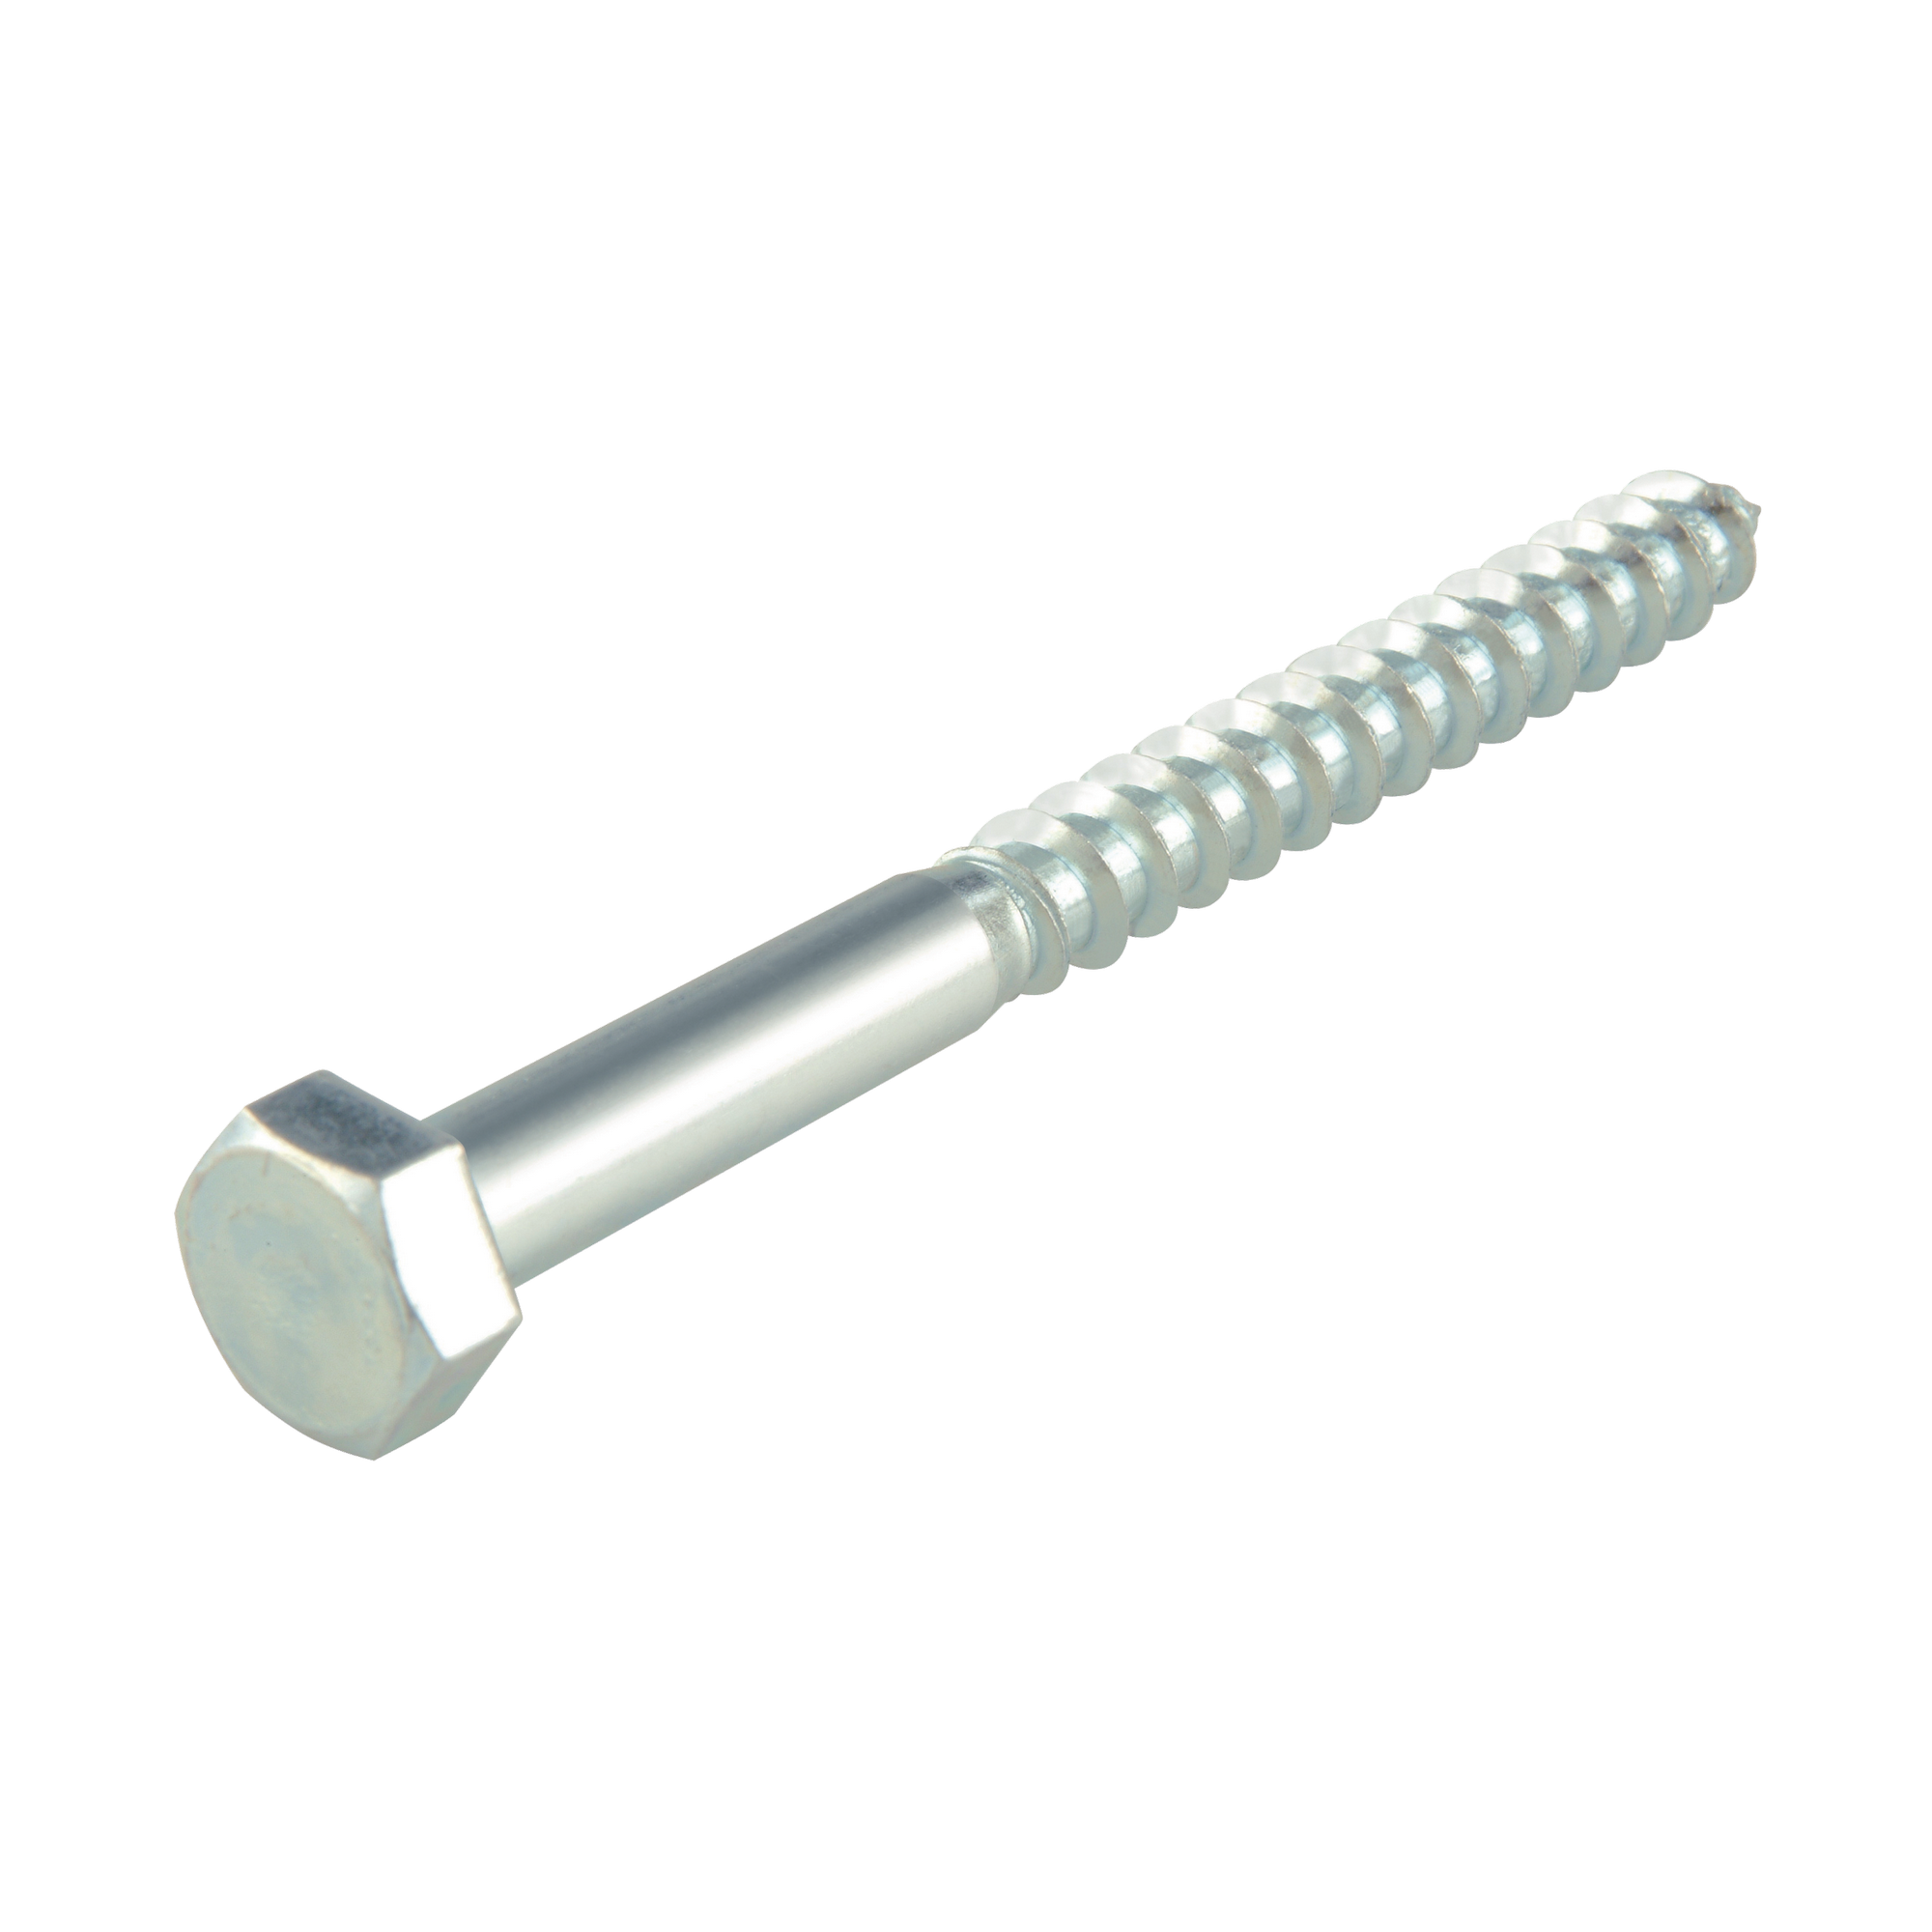 Schlüsselschrauben Stahl verzinkt Ø 10 x 70 mm TG DIN 571 4.8, 25 Stück + product picture